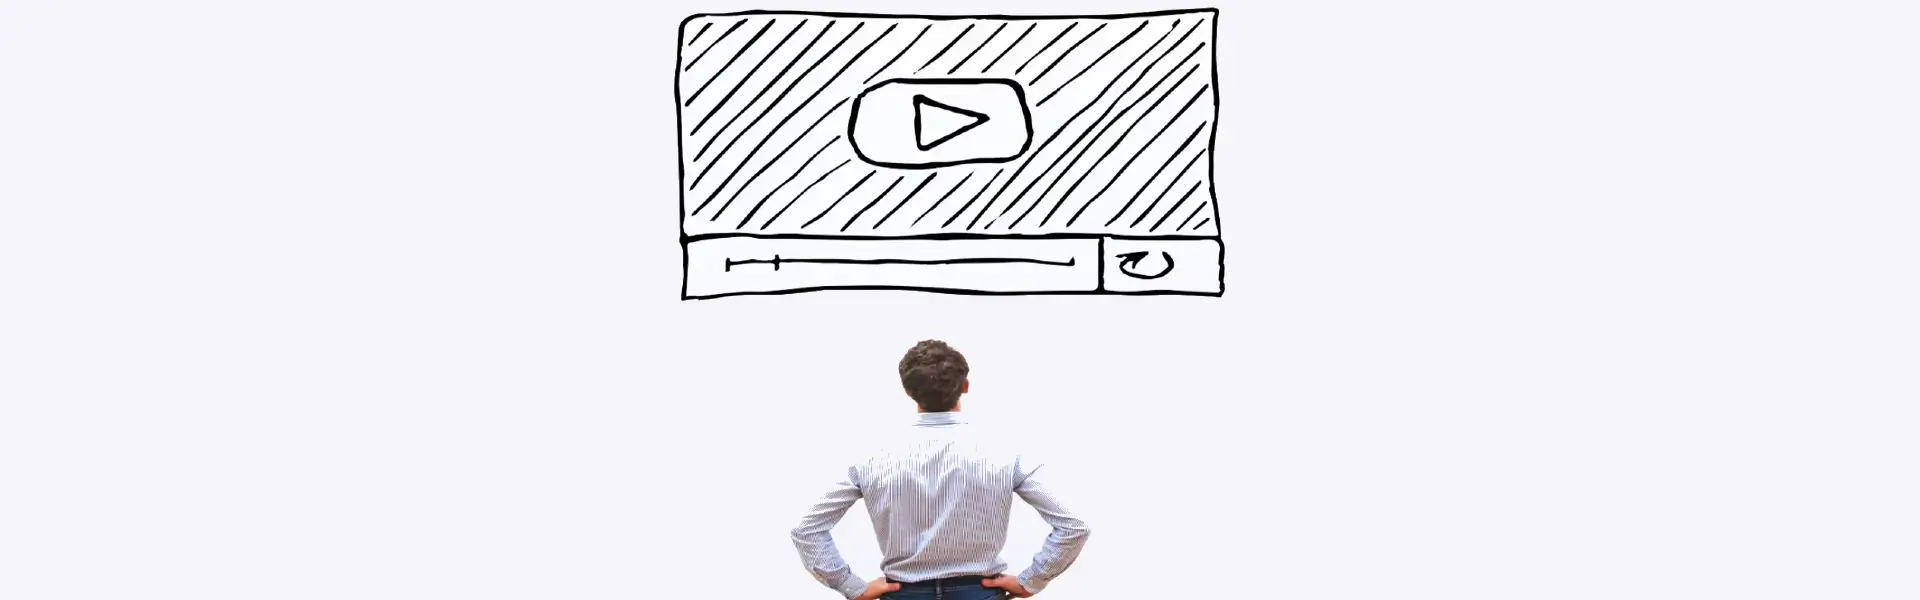 כיצד להשתמש בוידאו להגדרת זהות המותג